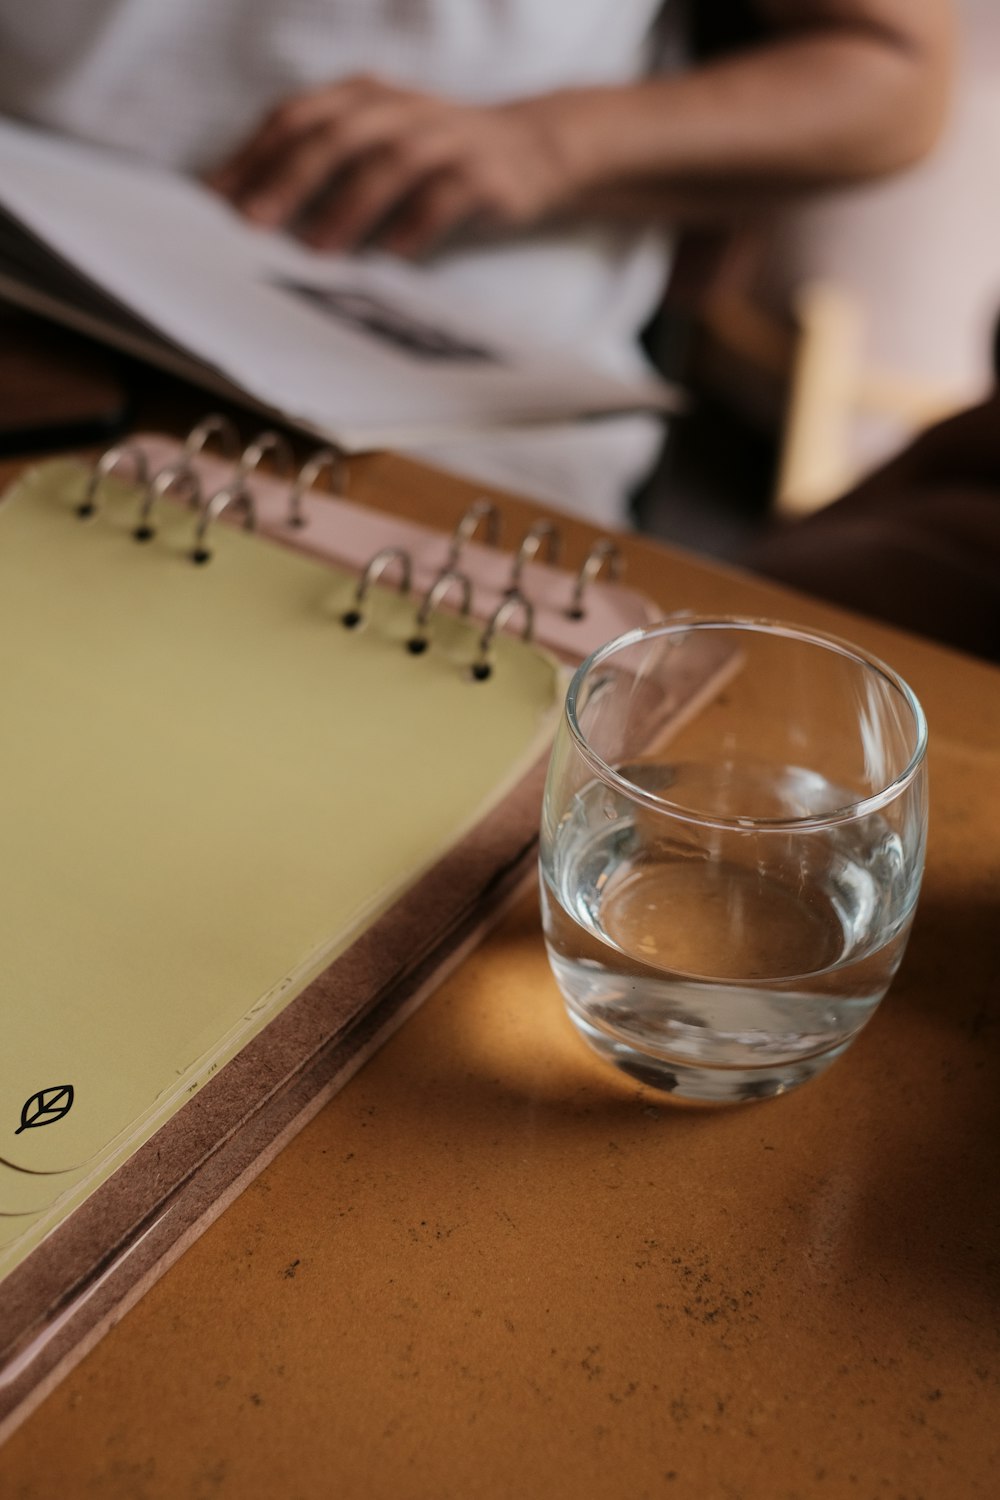 Un vaso de agua sentado junto a un cuaderno